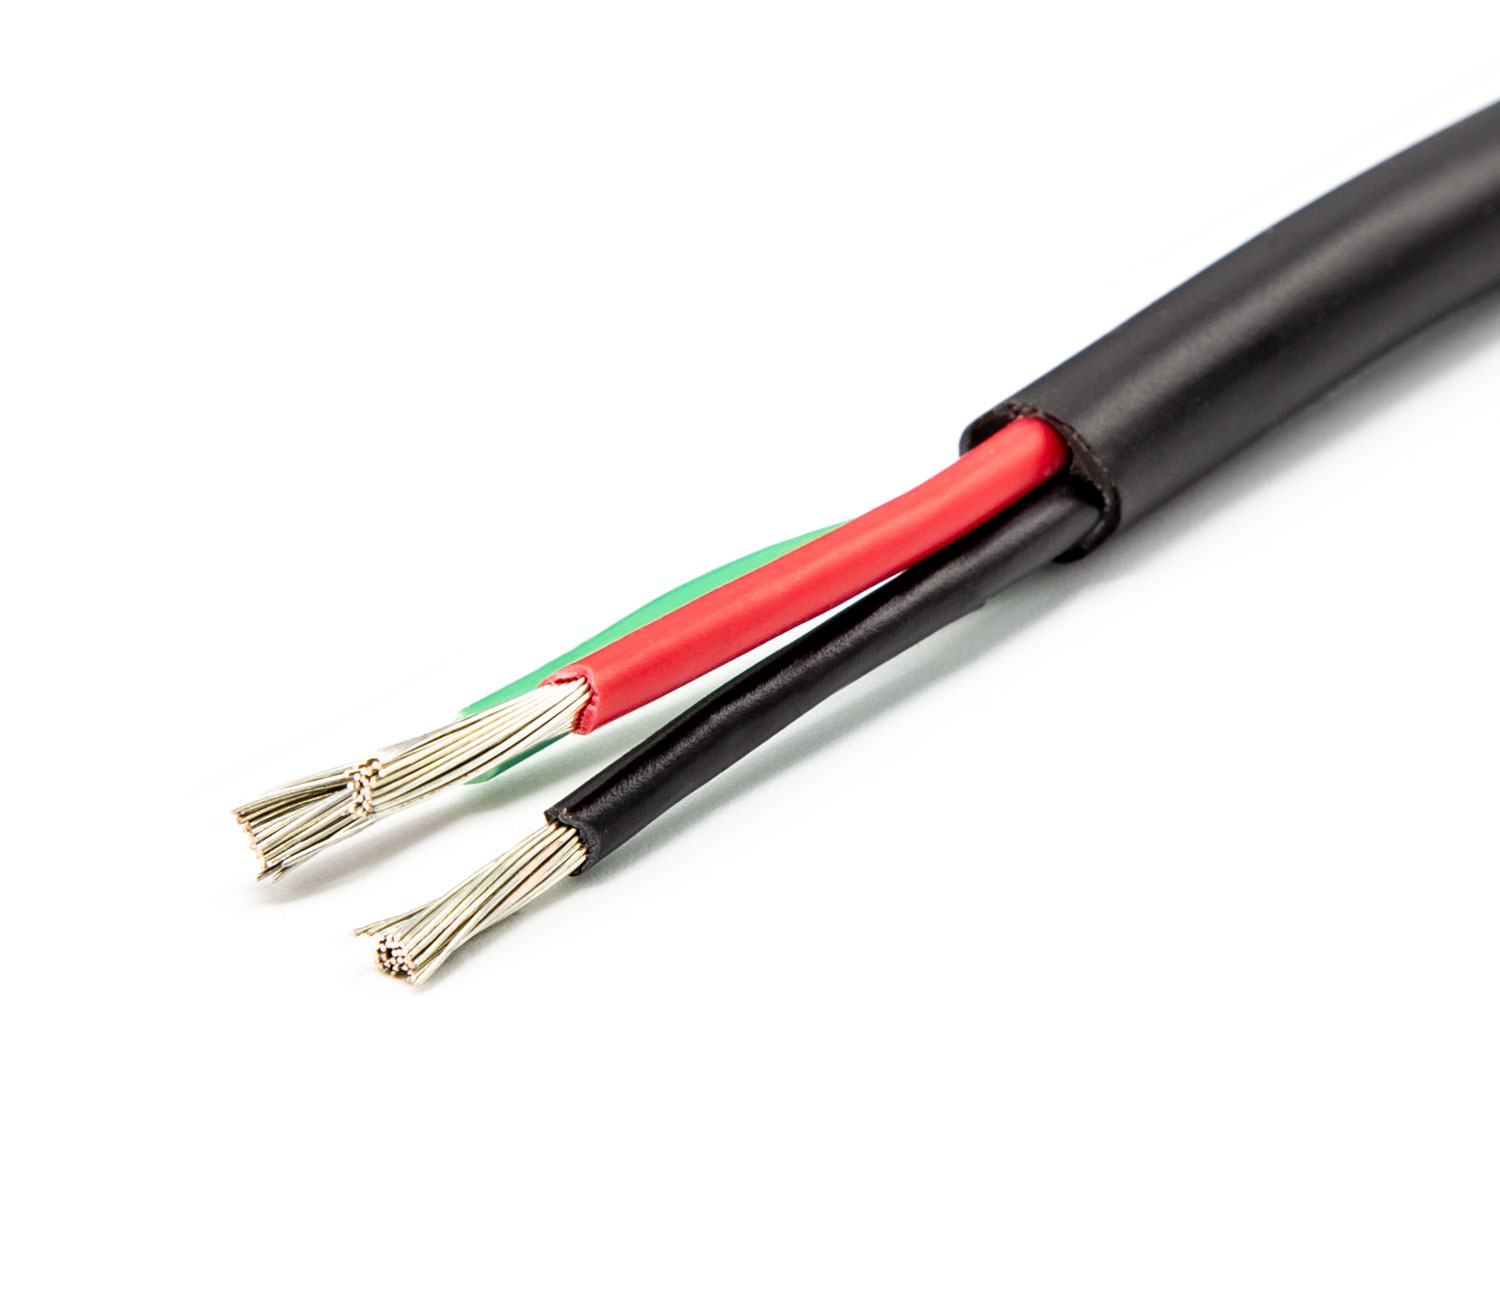  OCEANFLEX - Fortinnet elektrisk kabel multi-wire 5x2,5mm2 rund, 30m